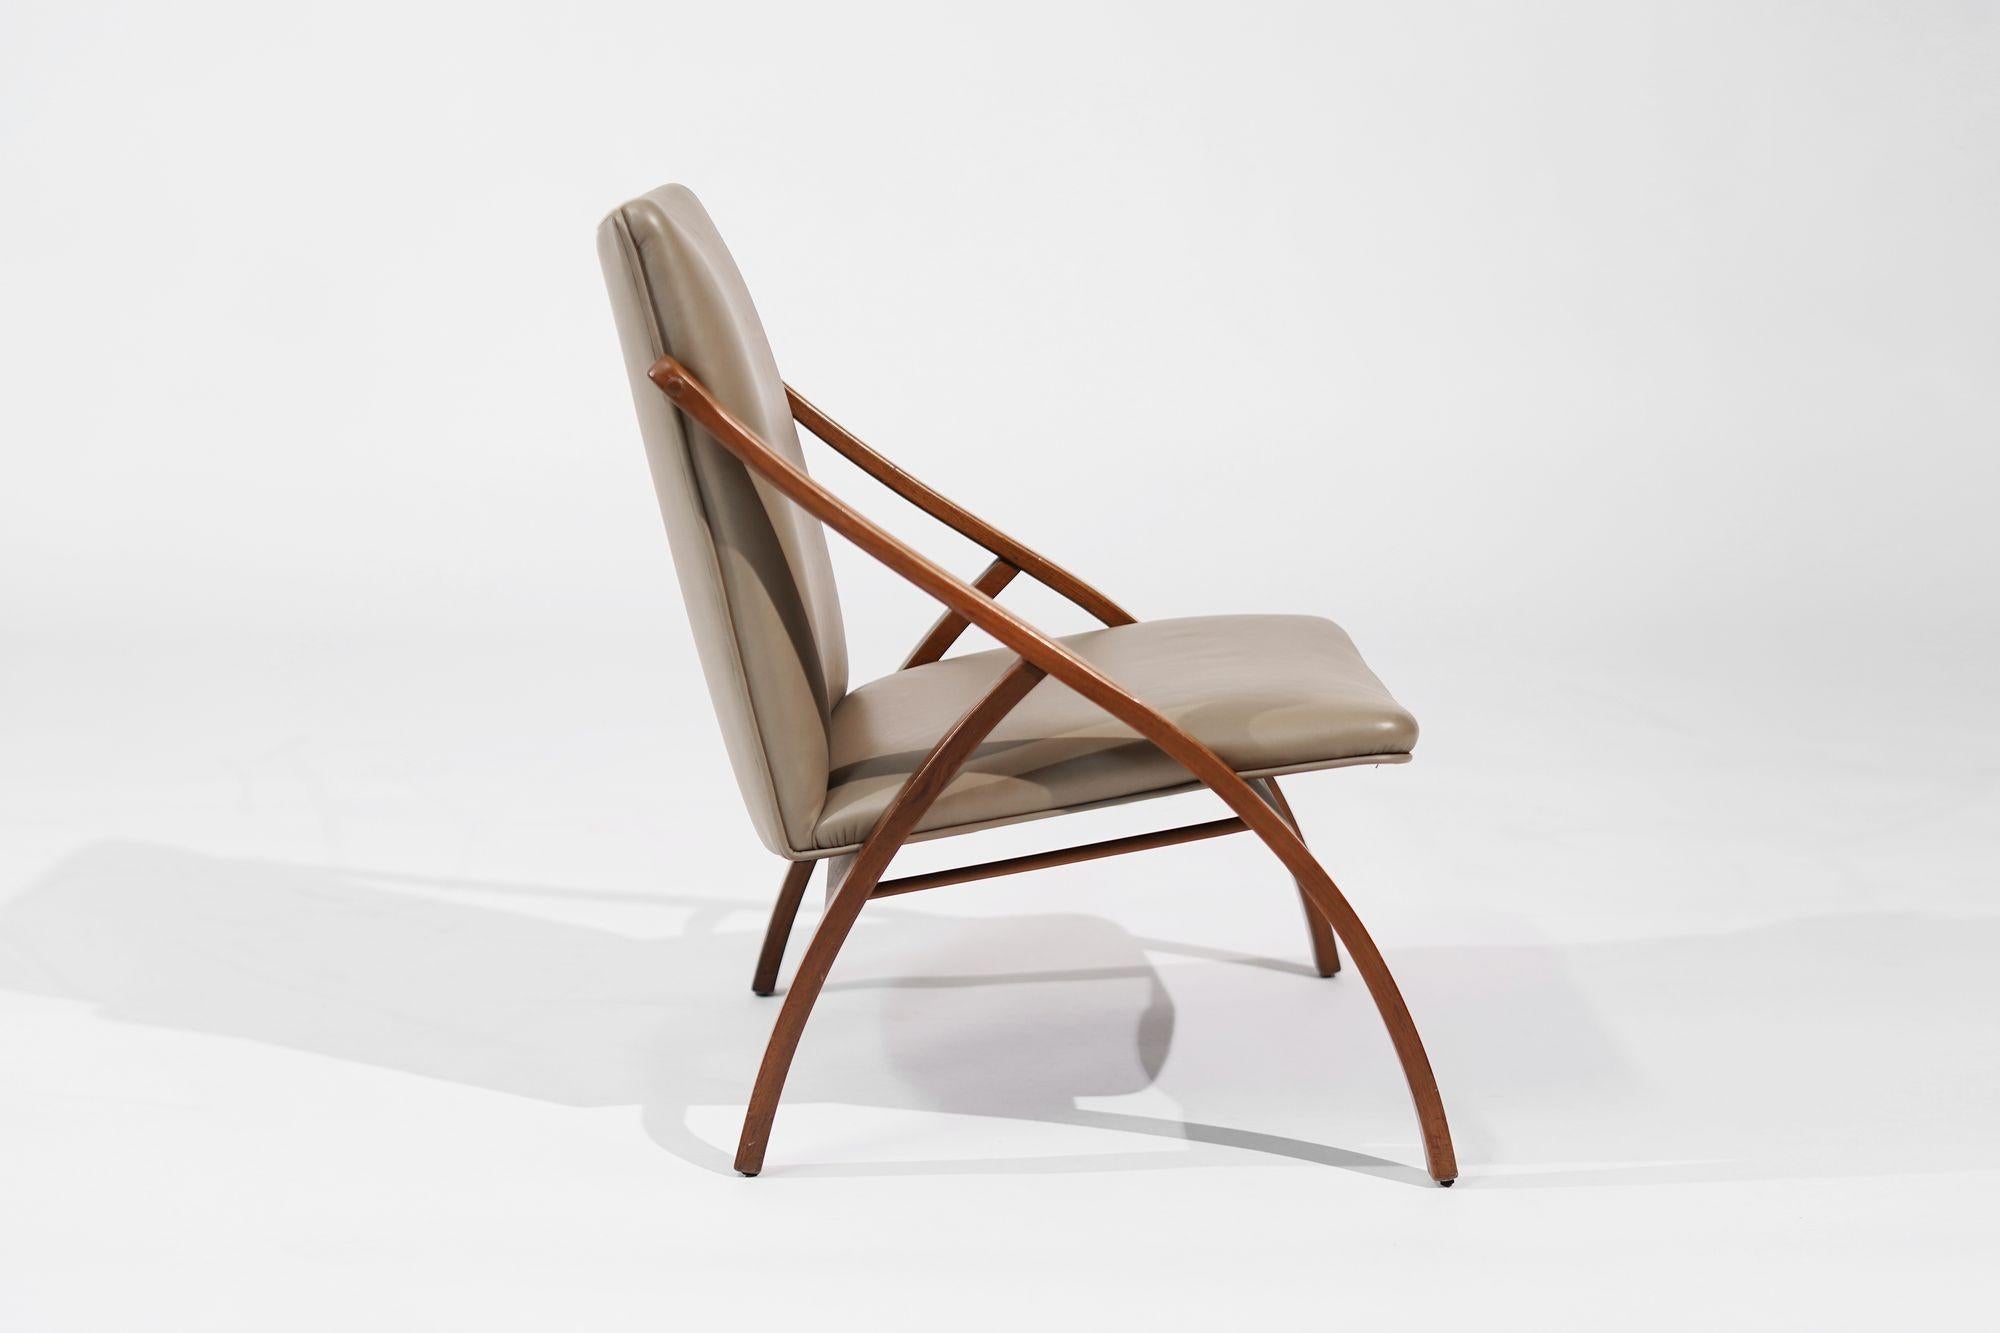 Ein sorgfältig restaurierter Bent Teak Lounge Chair, ein authentisches Stück schwedischen Designs aus den 1950er Jahren. Der Rahmen aus Teakholz strahlt den Charme der Jahrhundertmitte aus und bringt seine natürliche Maserung und Wärme zur Geltung.